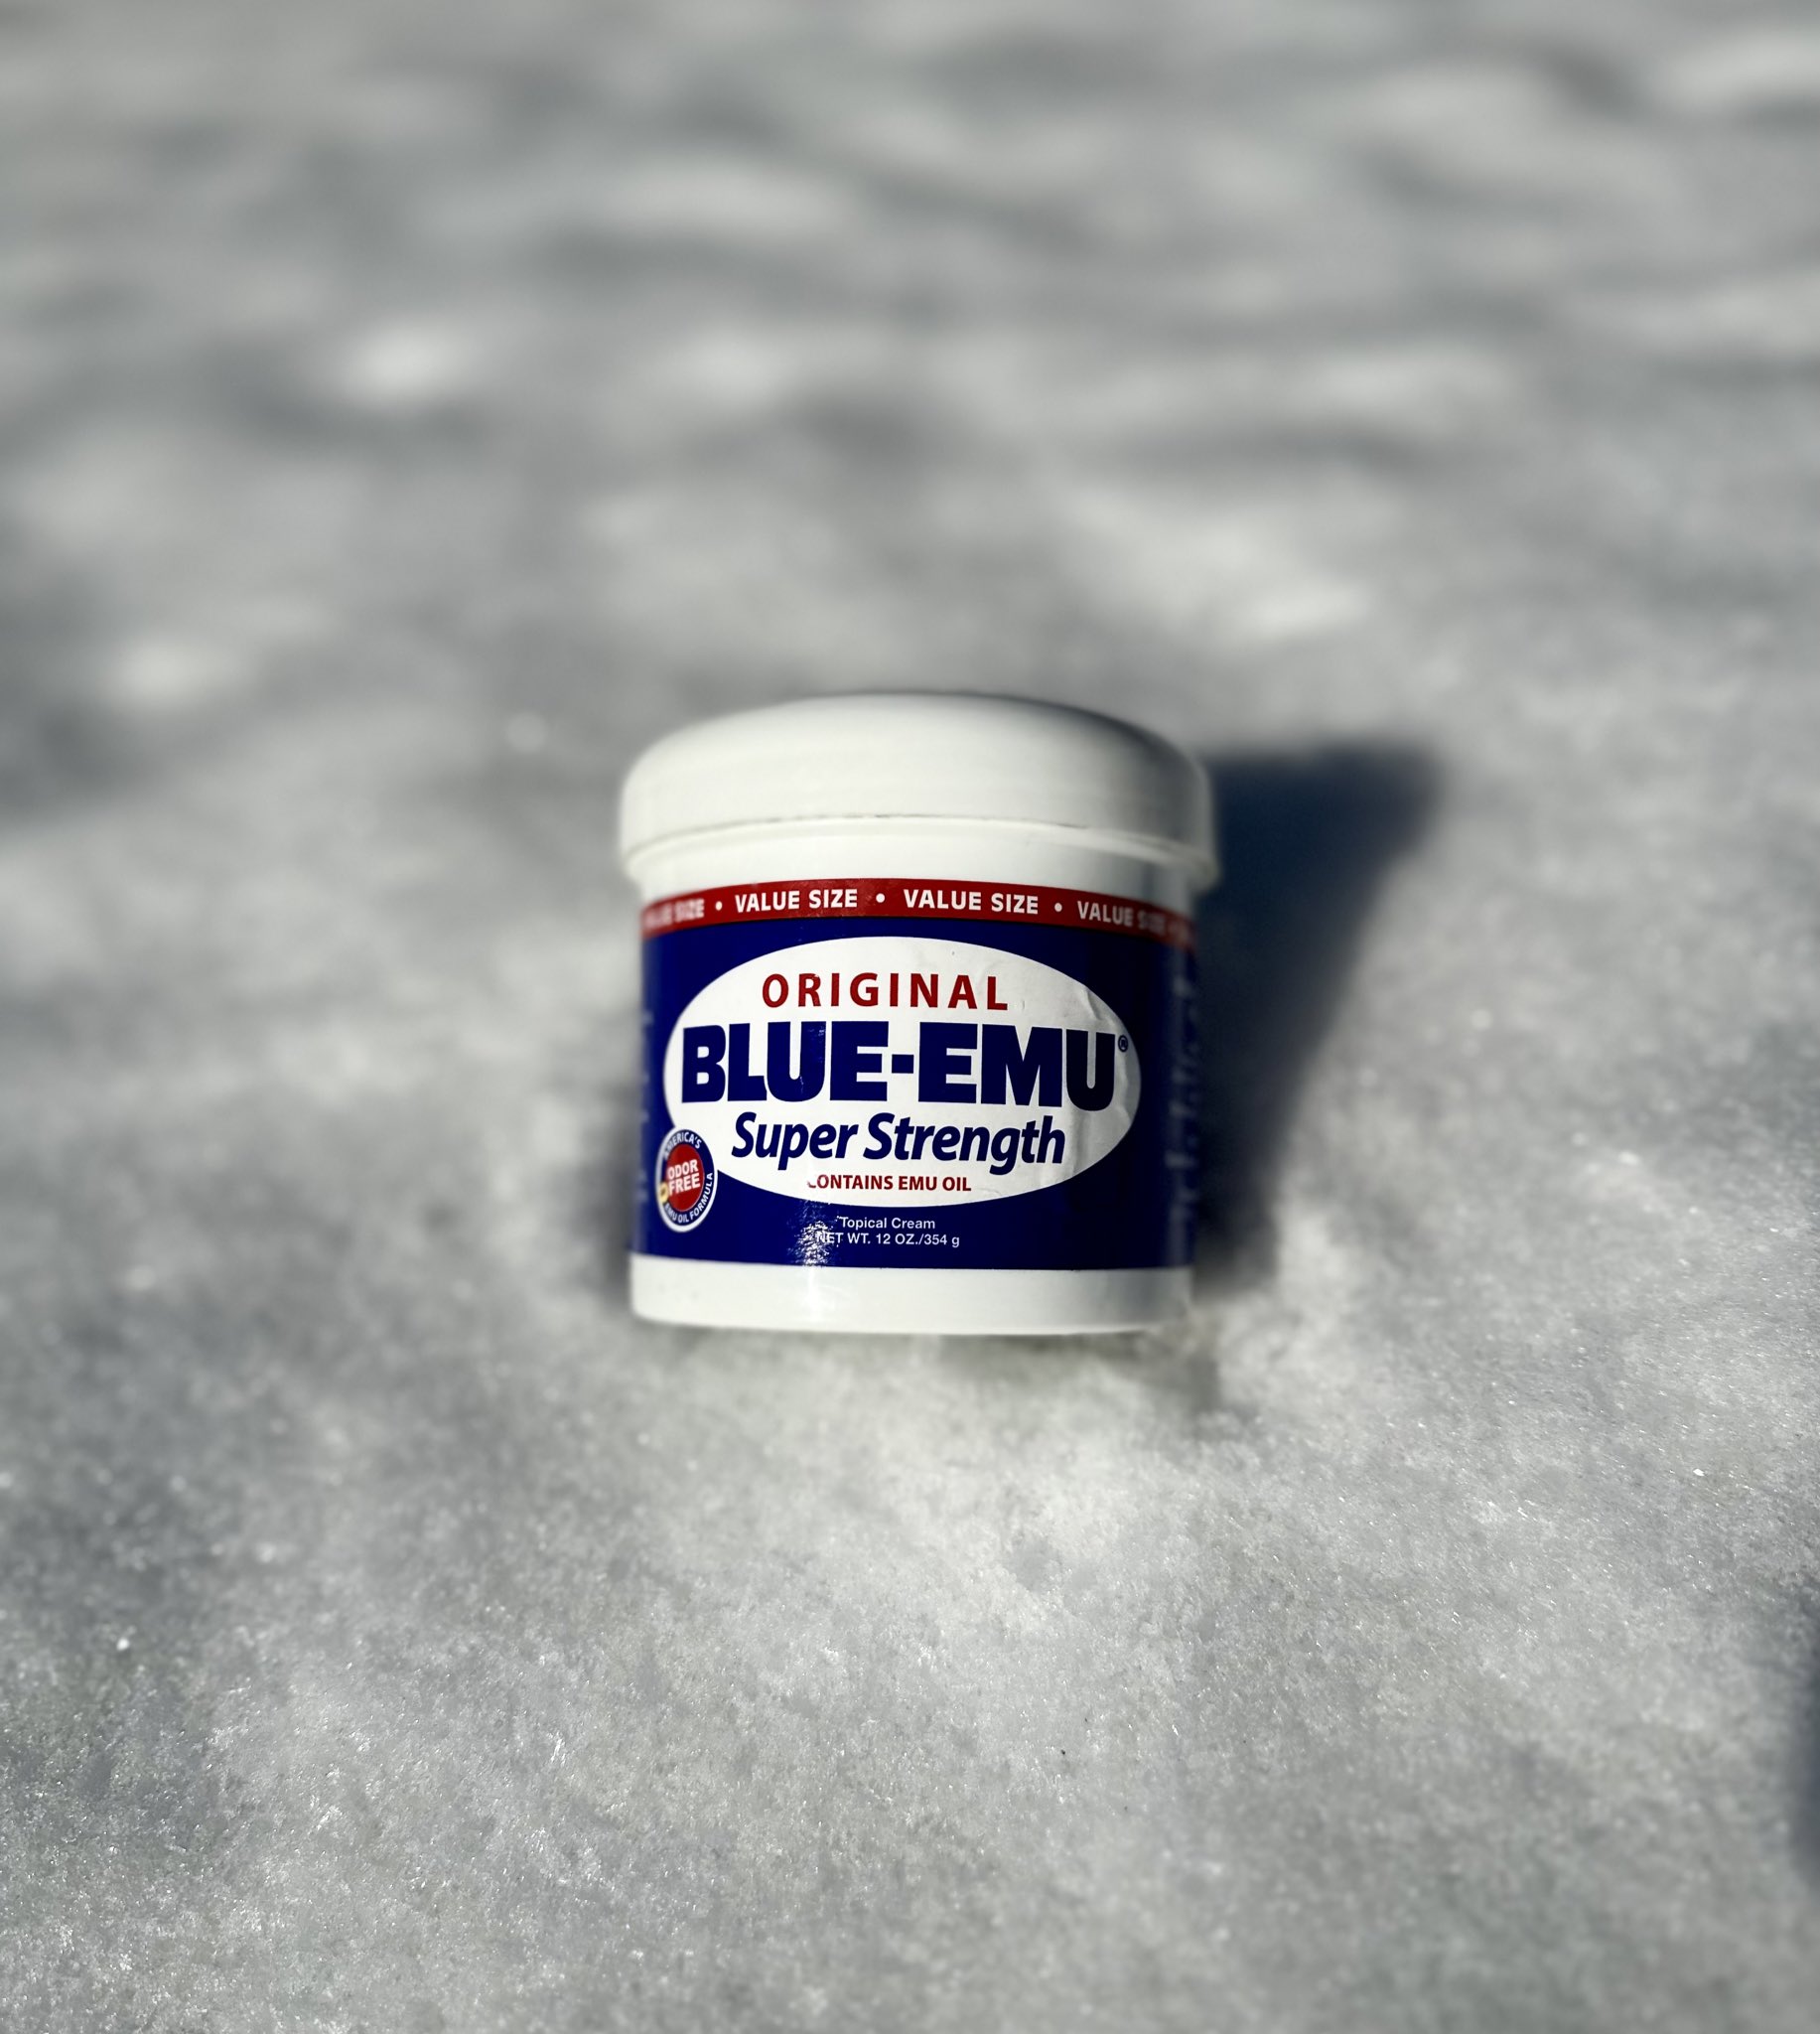 Blue-Emu Topical Cream, Super Strength, Original, Value Size - 12 oz